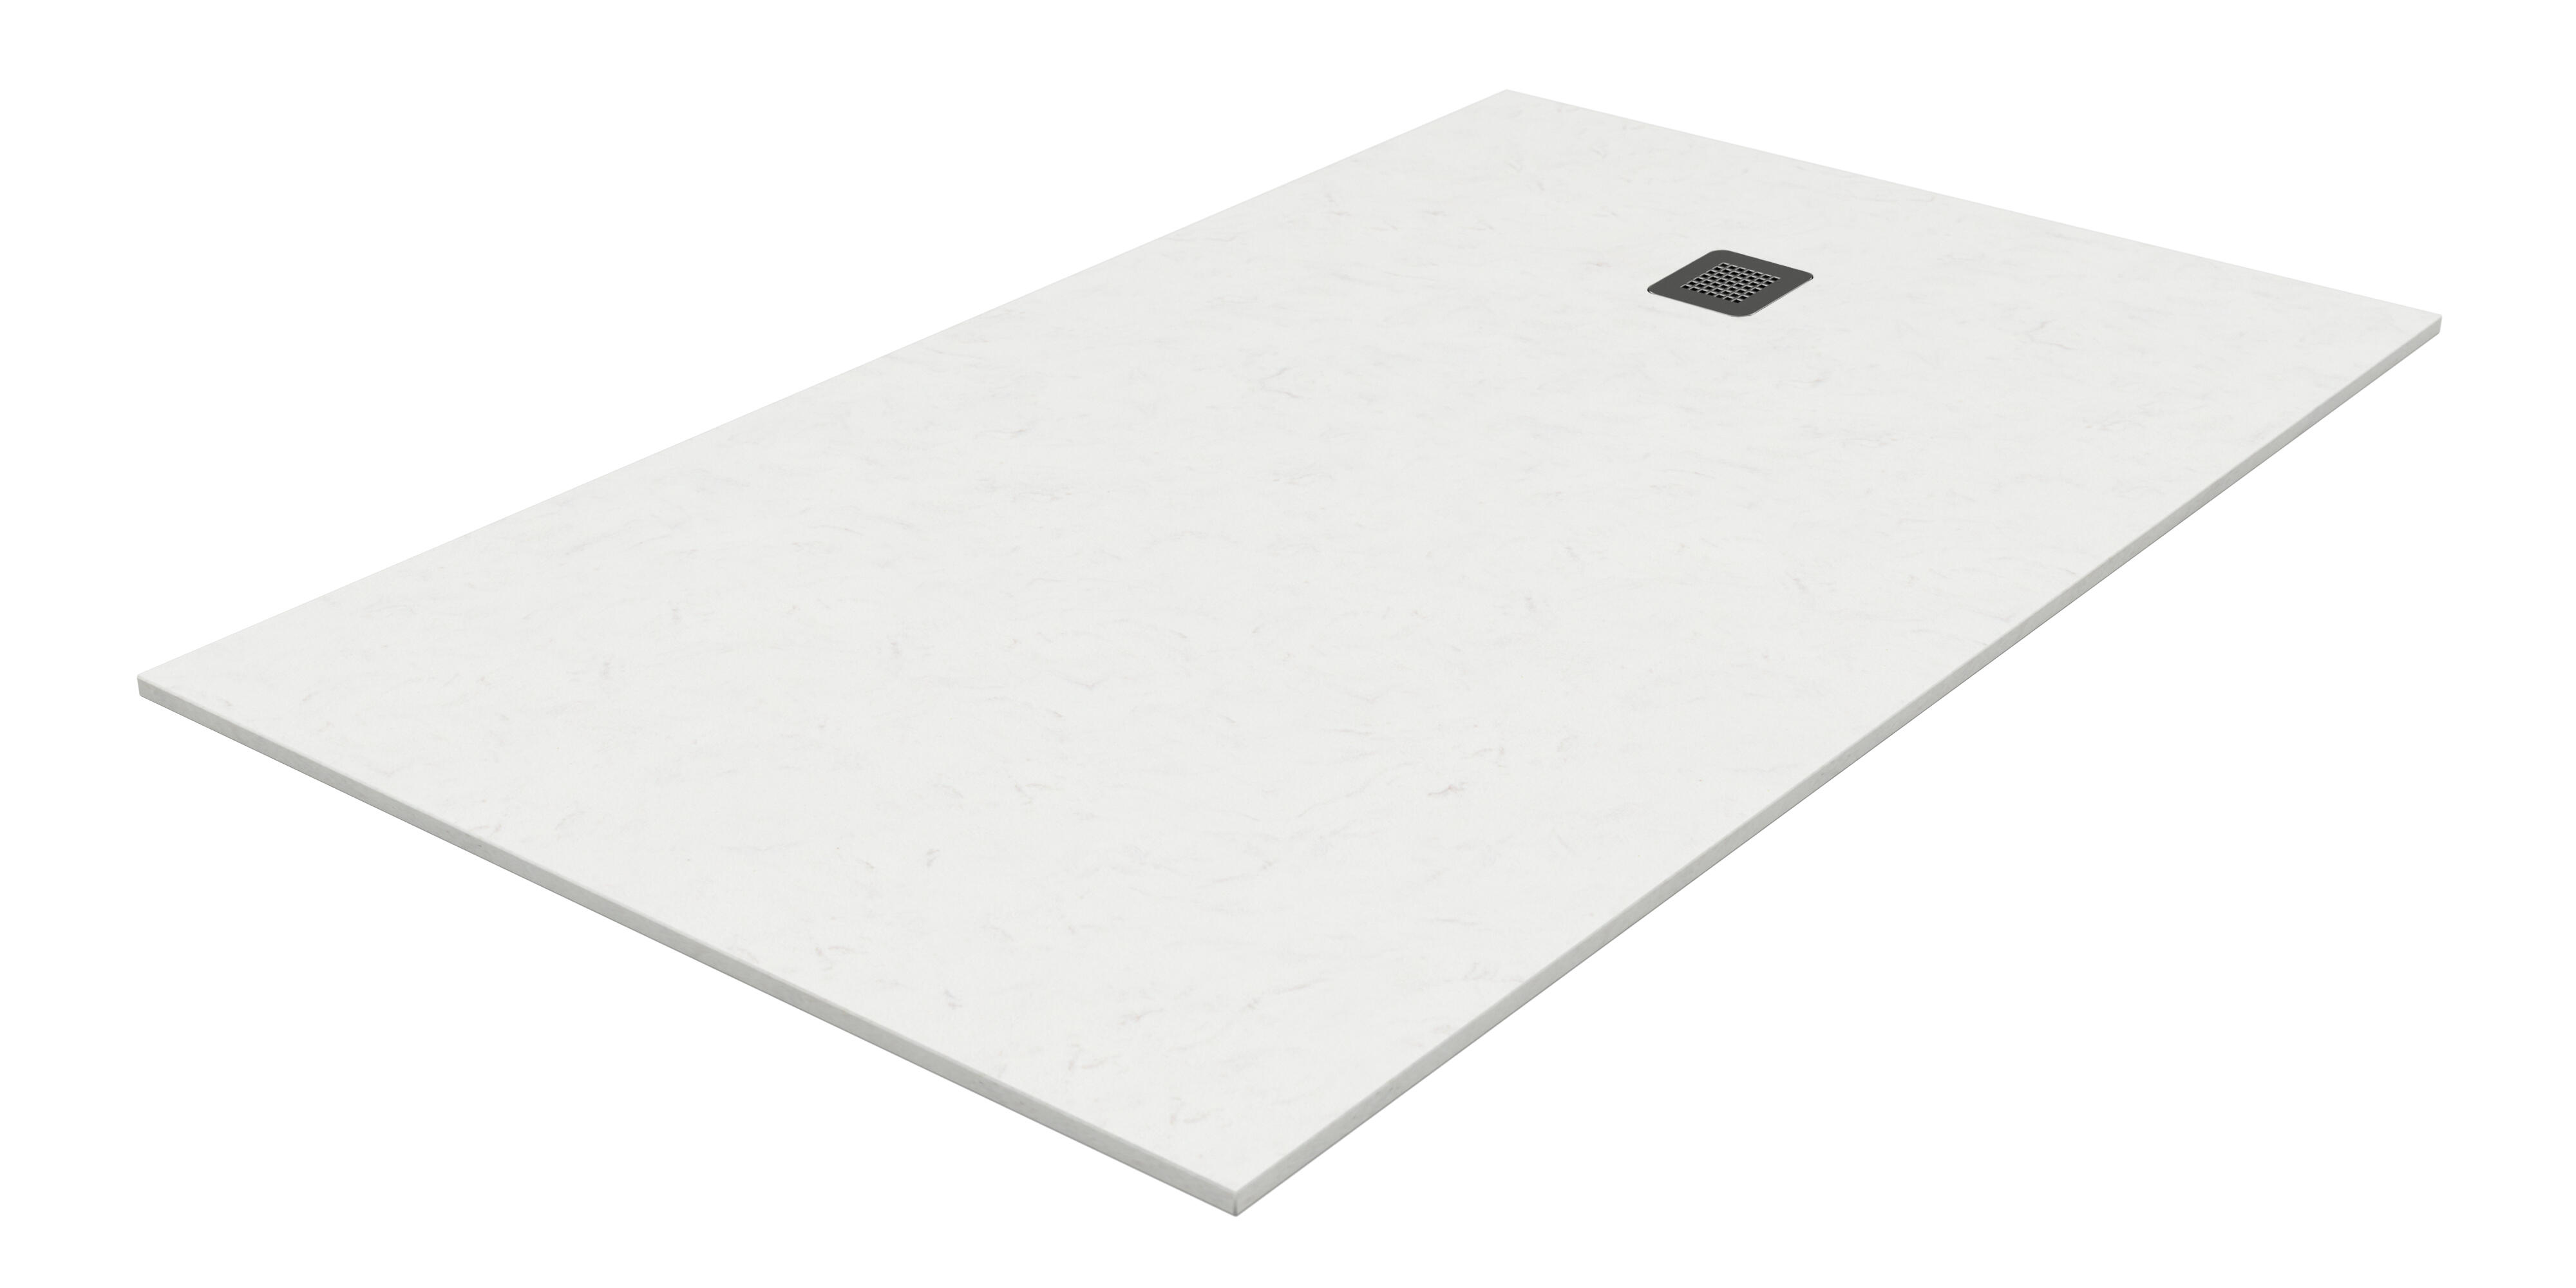 Plato de ducha kioto 120x80 cm blanco